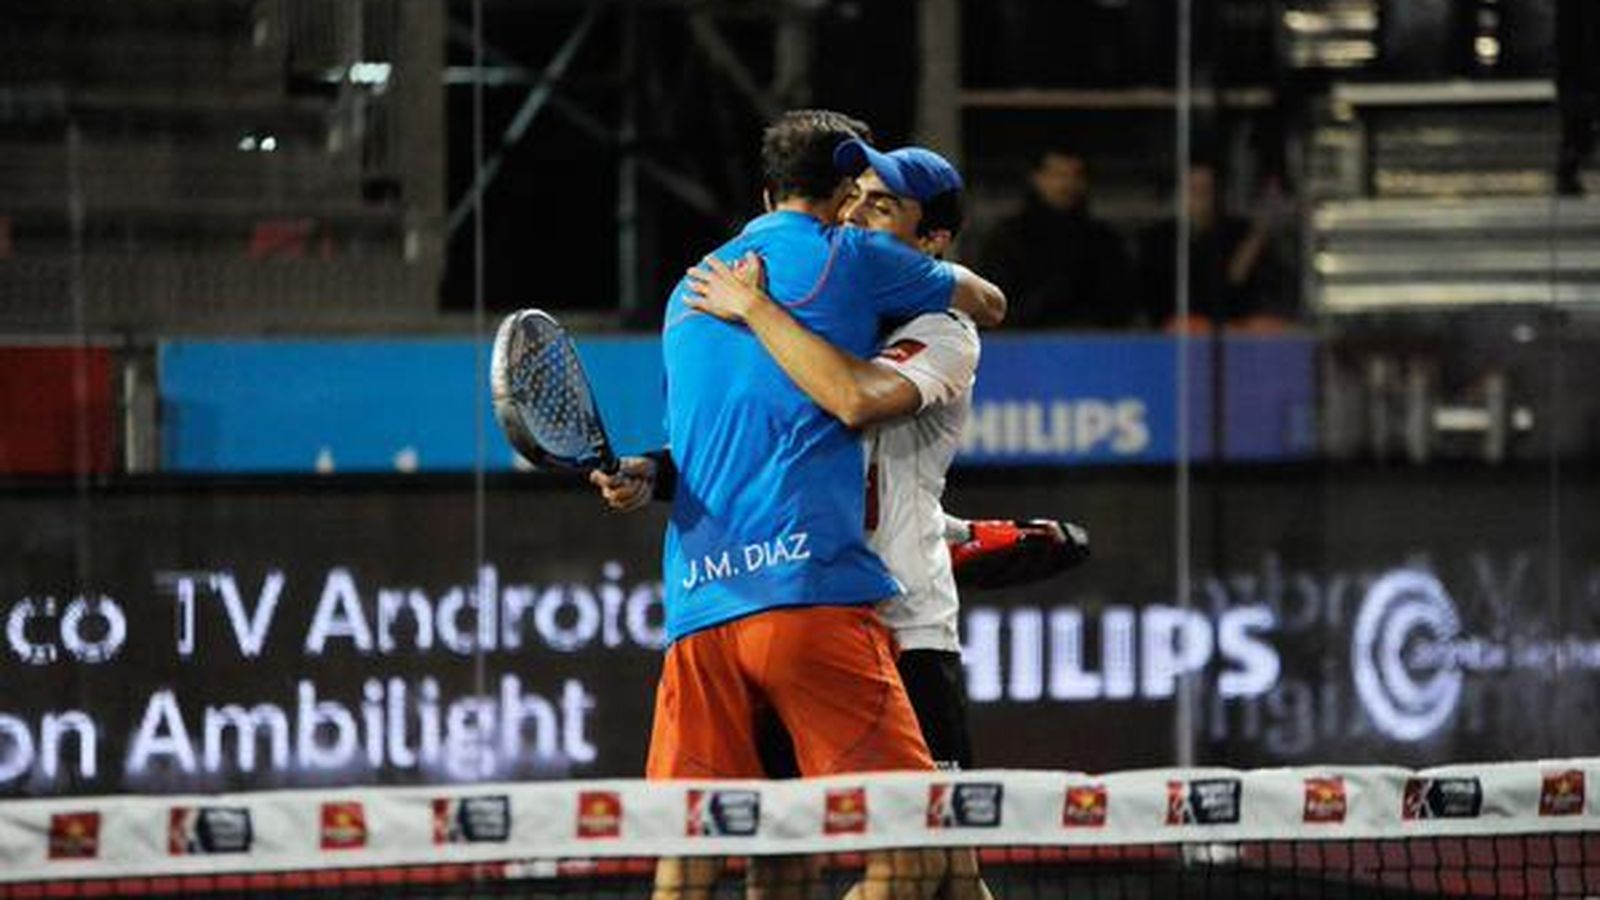 Foto: Díaz y Mieres consiguieron su primera victoria como pareja (Foto: WPT)